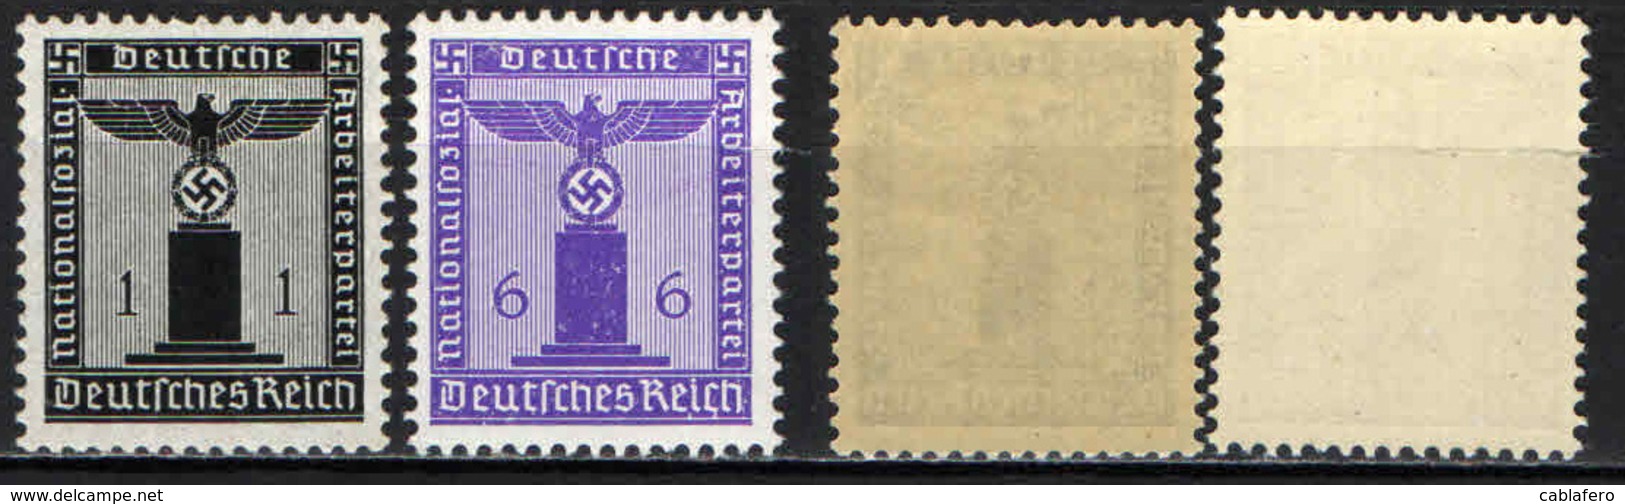 GERMANIA TERZO REICH - 1942 - AQUILA E CROCE UNCINATA - MNH - Servizio